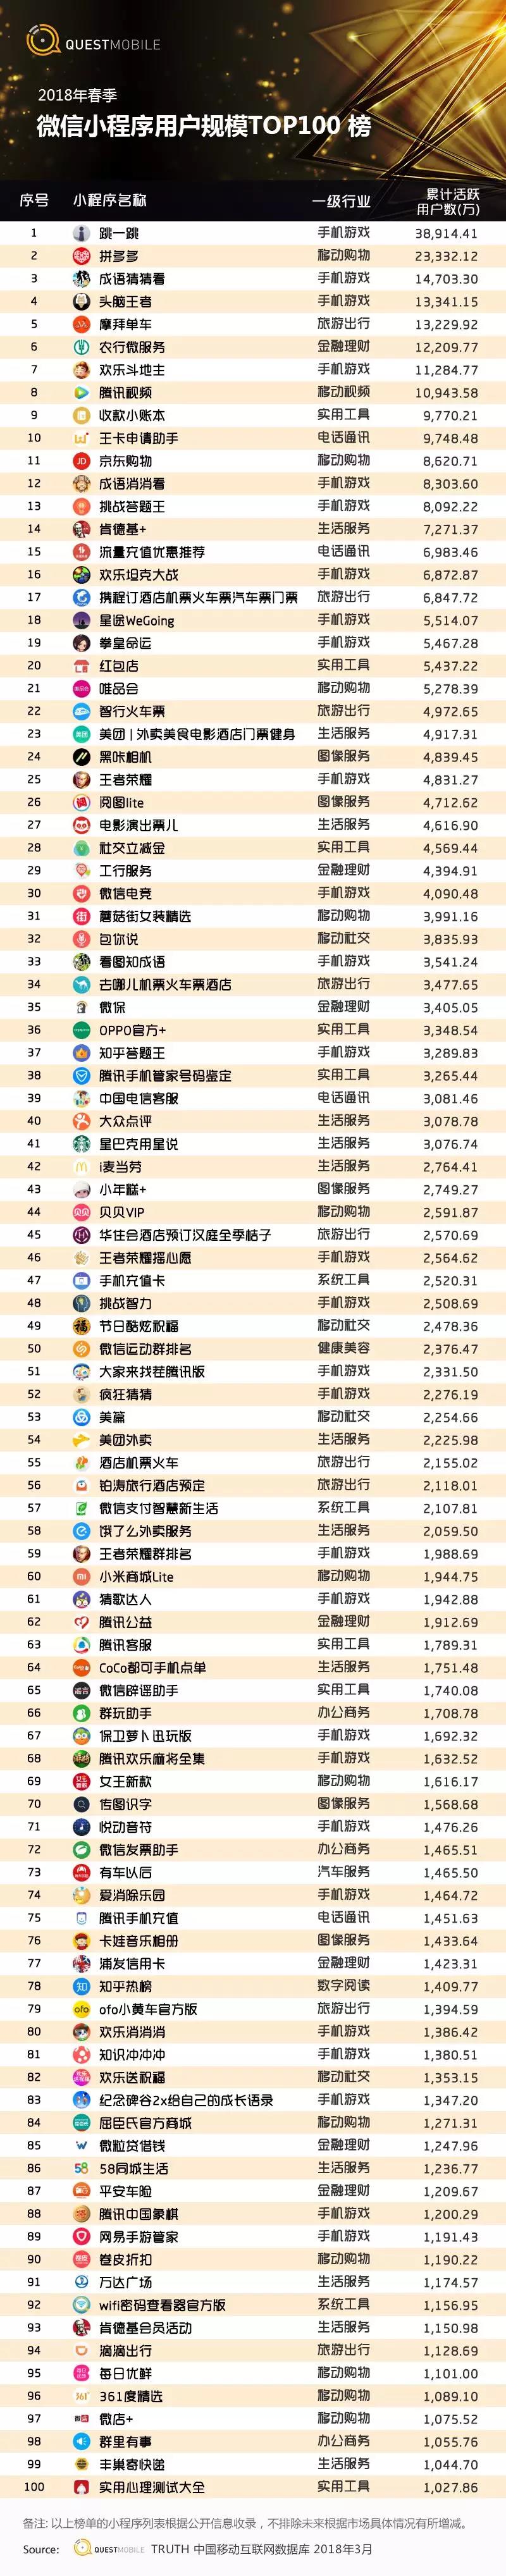 微信小程序TOP100榜